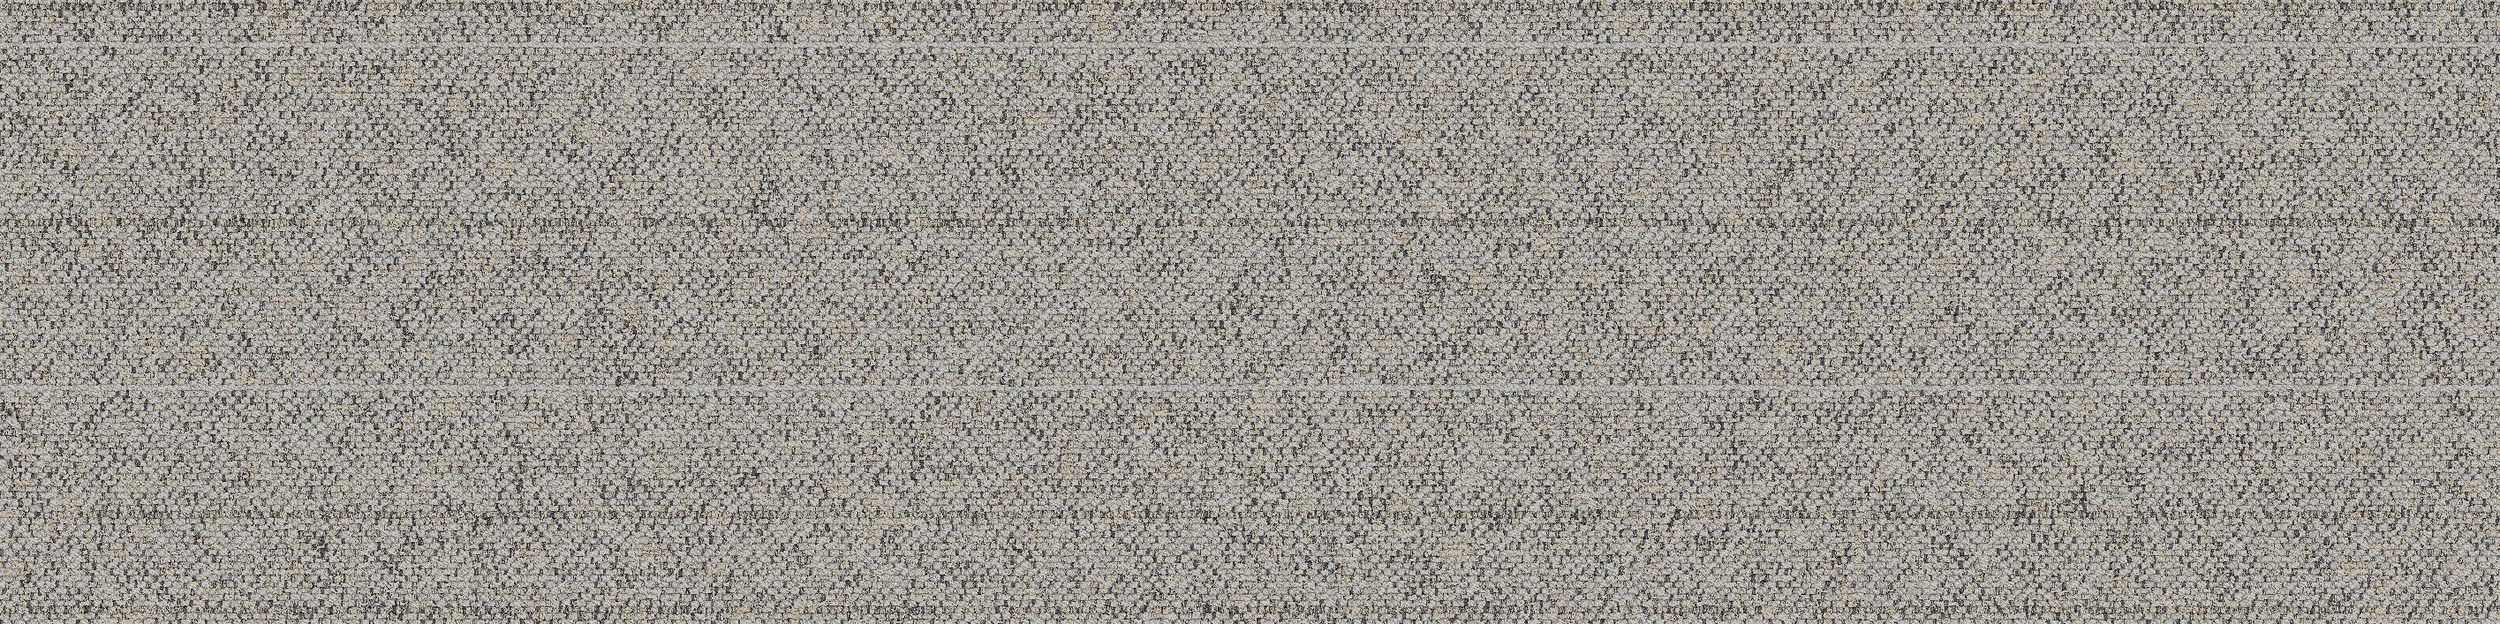 WW860 Carpet Tile In Linen Tweed imagen número 2